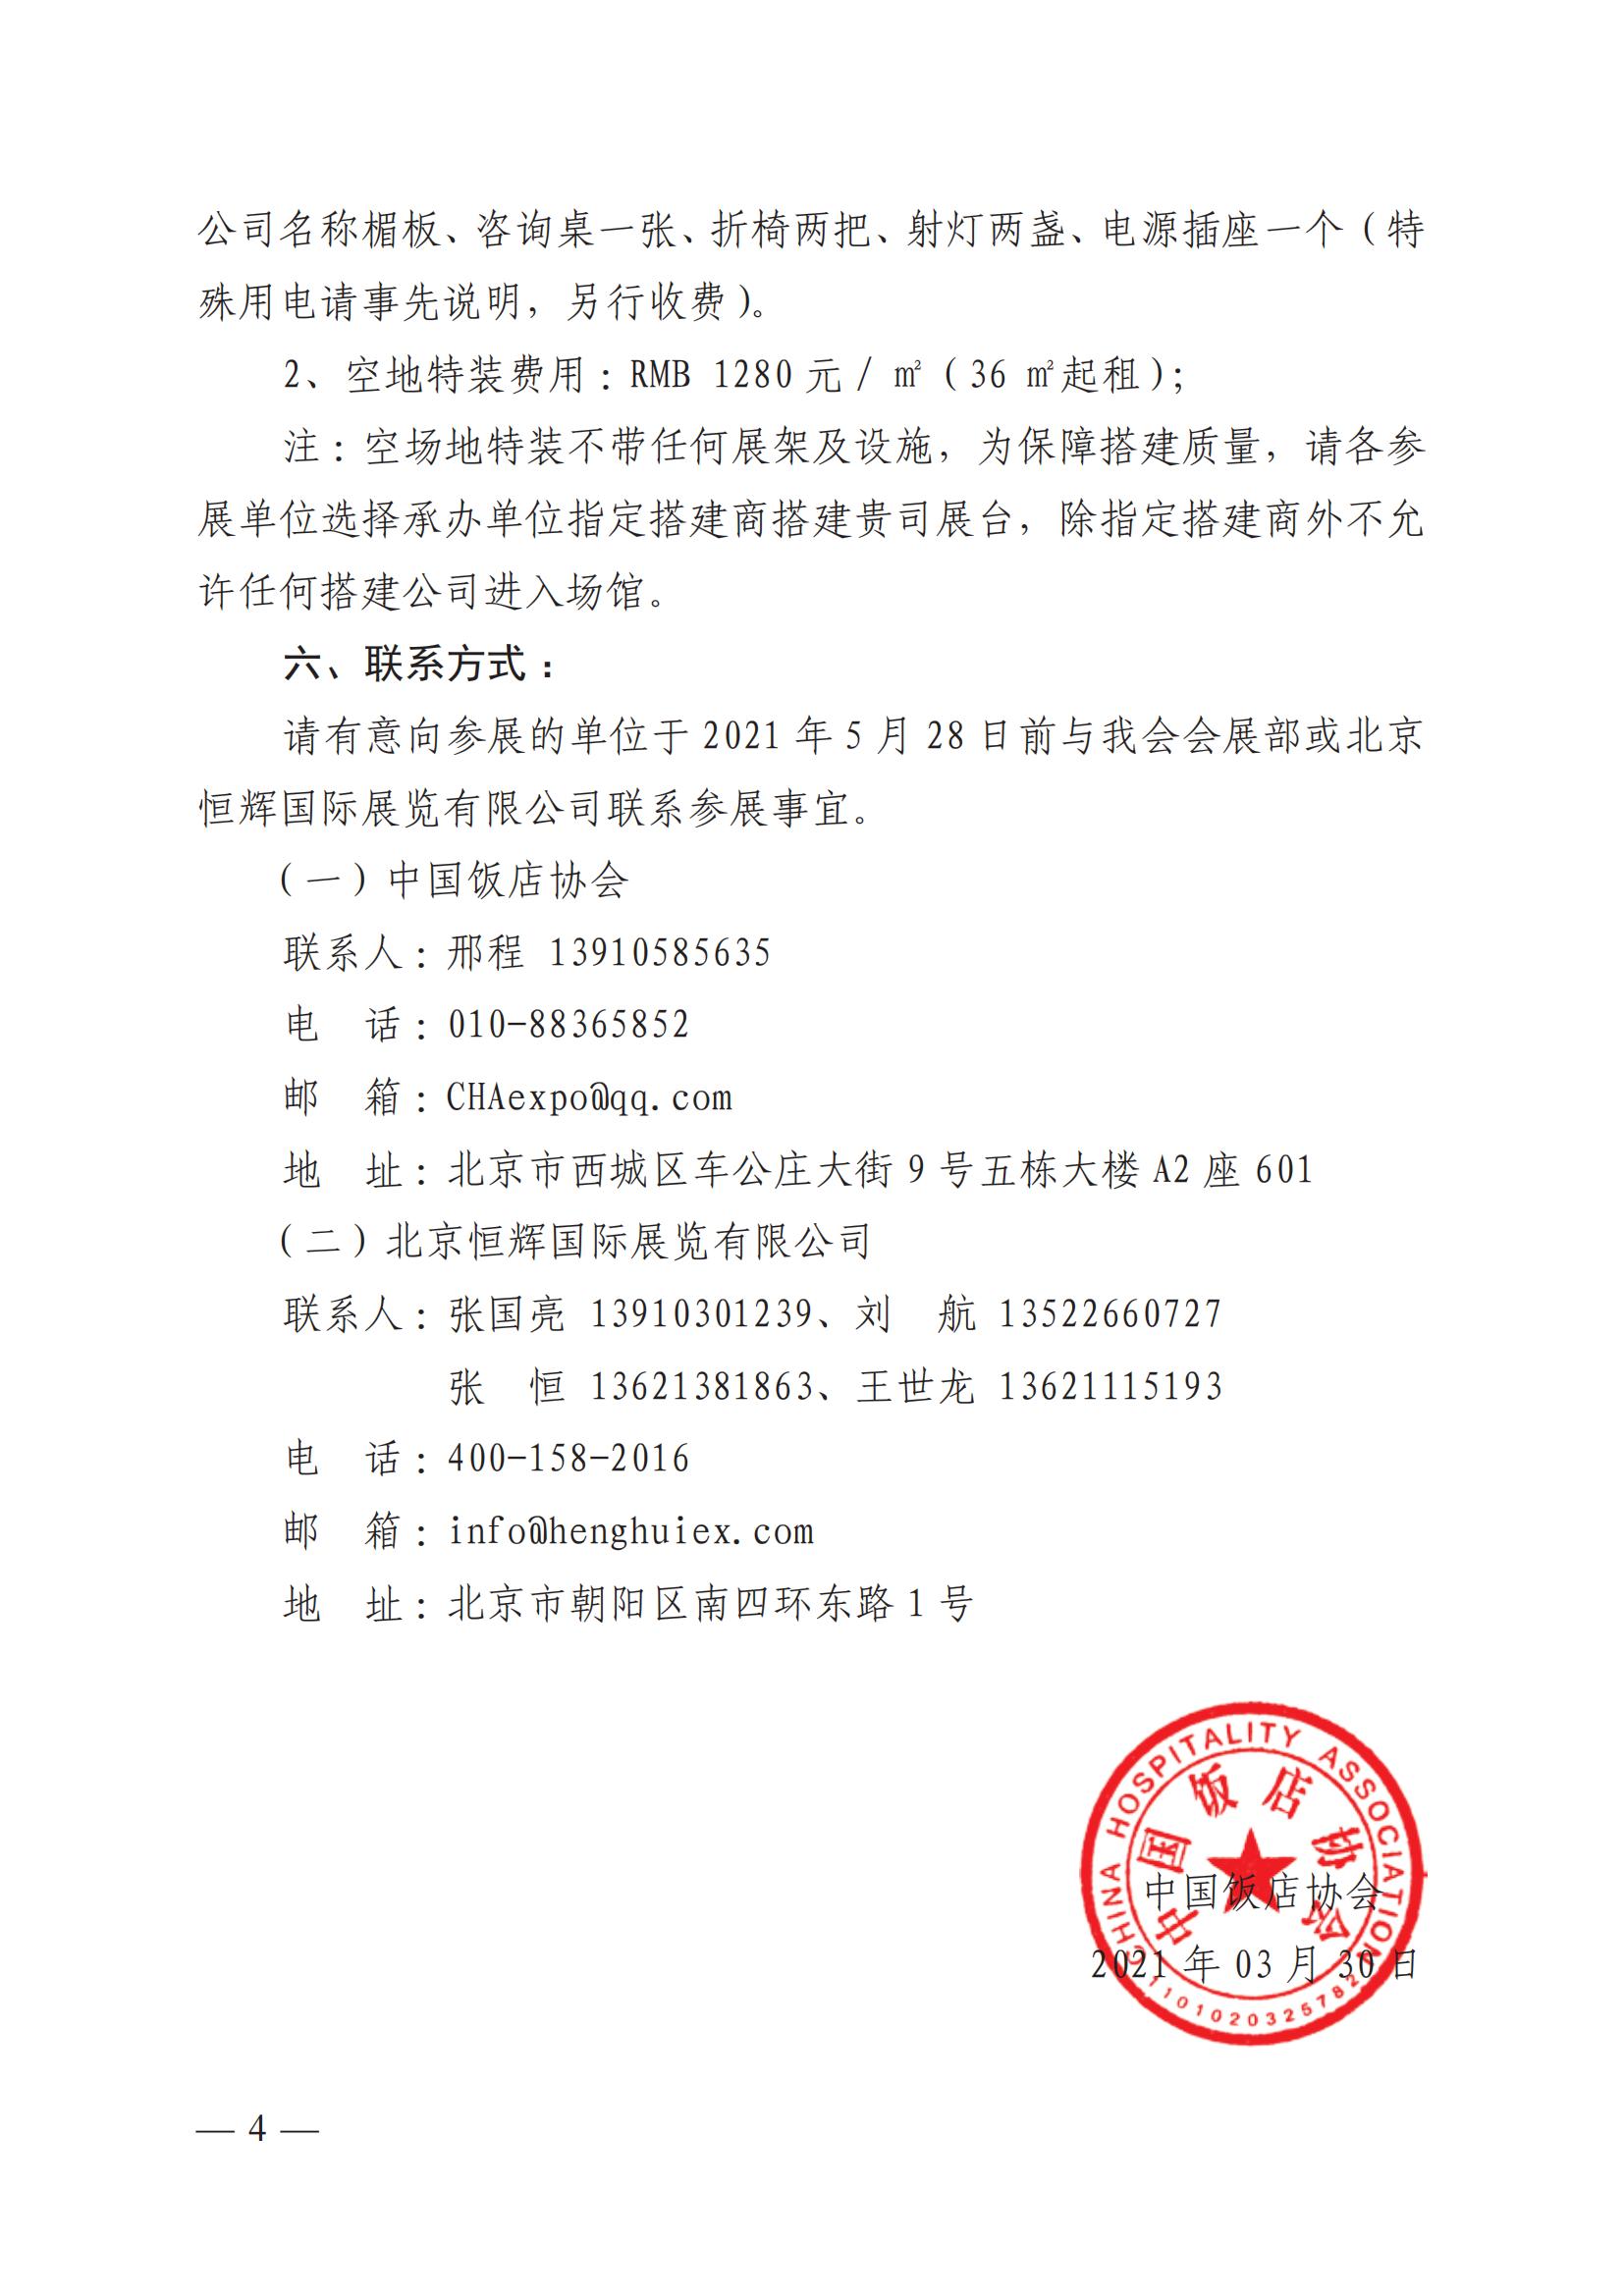 关于举办“第十一届北京国际酒店用品及餐饮业展览会”的通知(图4)